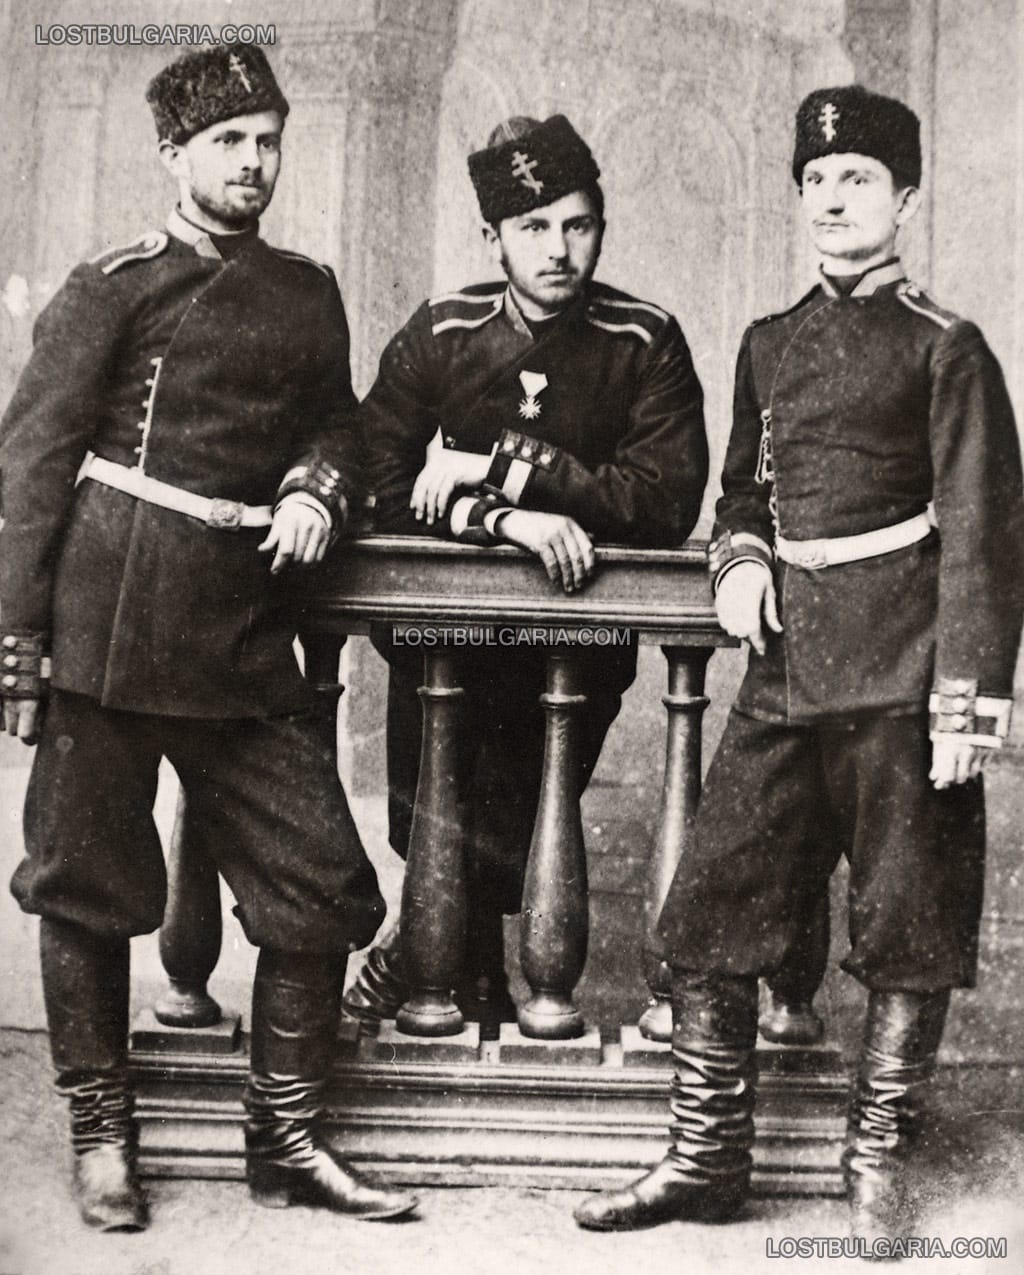 Станчо Димитриев с кръста "За Храброст", получен за участието му в Сръбско-Българската война със свои съвипускници юнкери от Военното училище, София края на 1885 г.